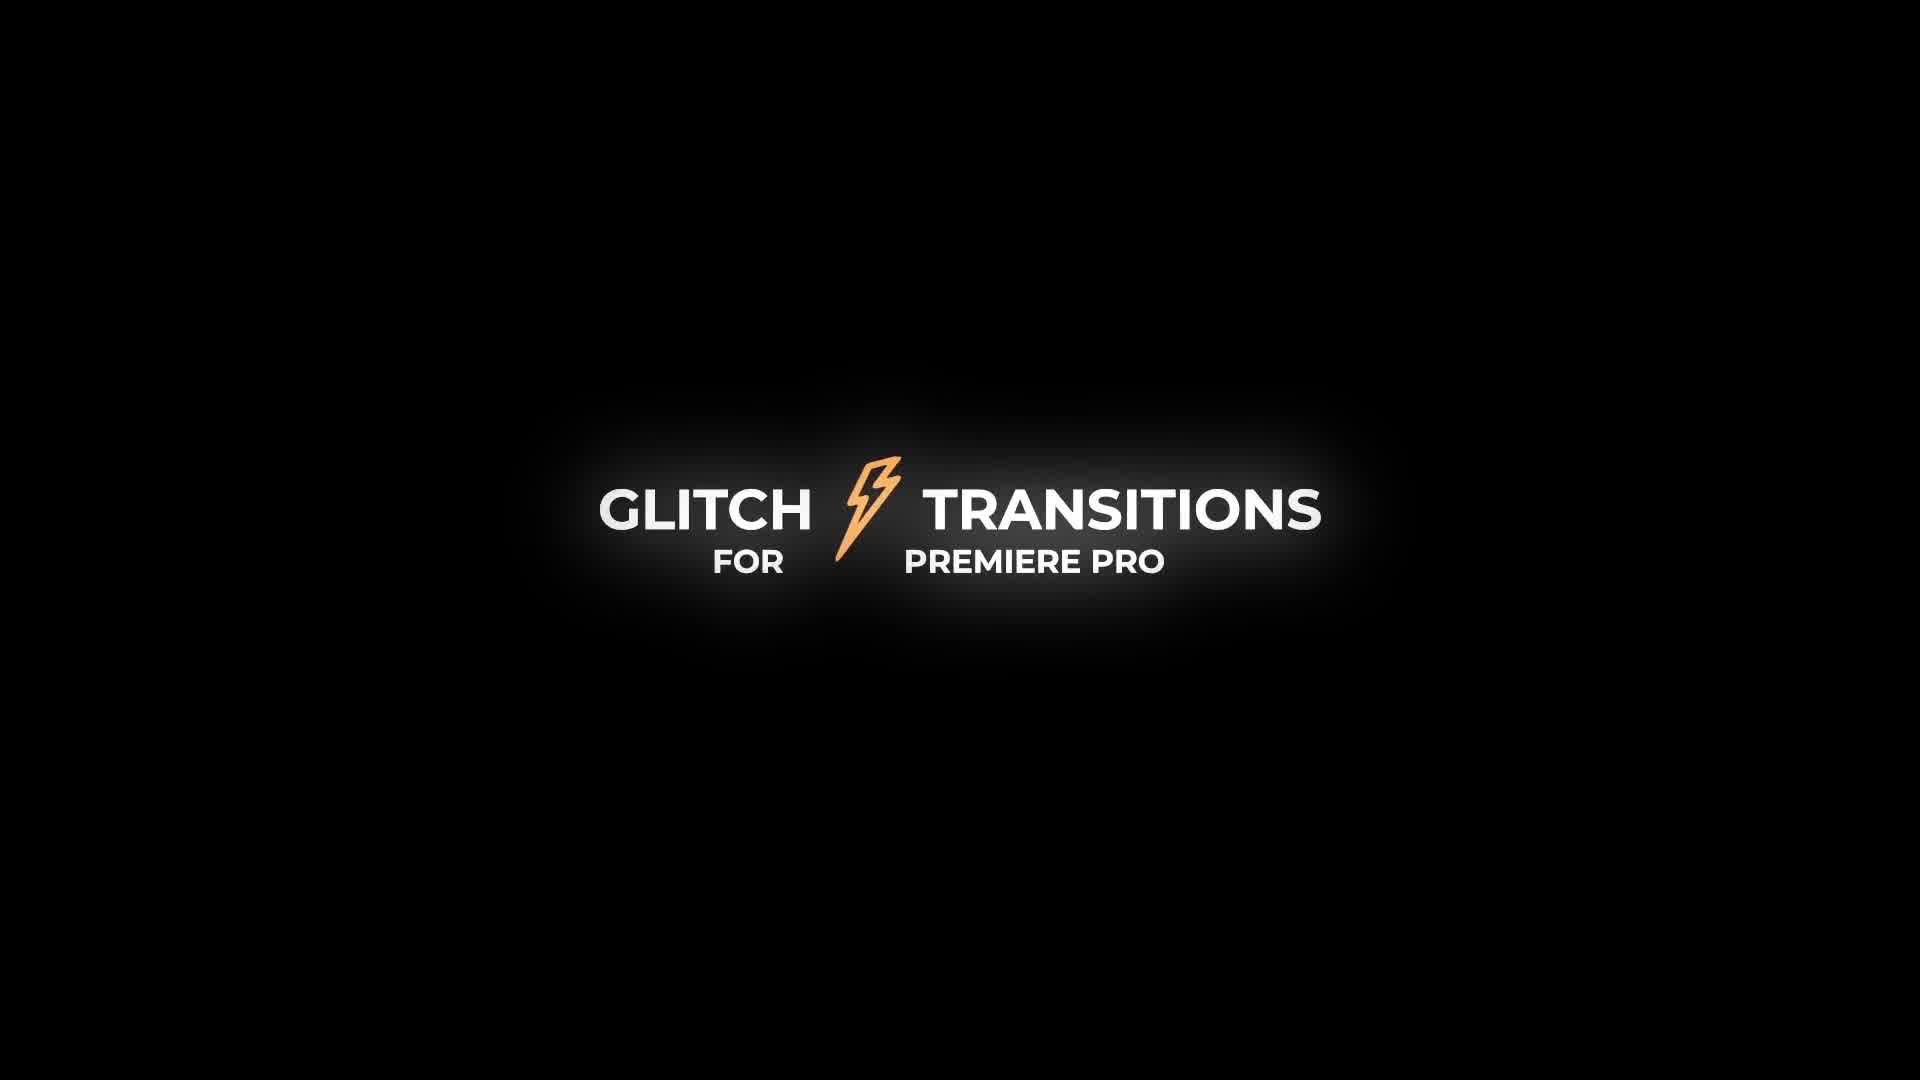 Glitch Transitions for Premiere Pro Videohive 25152760 Premiere Pro Image 12